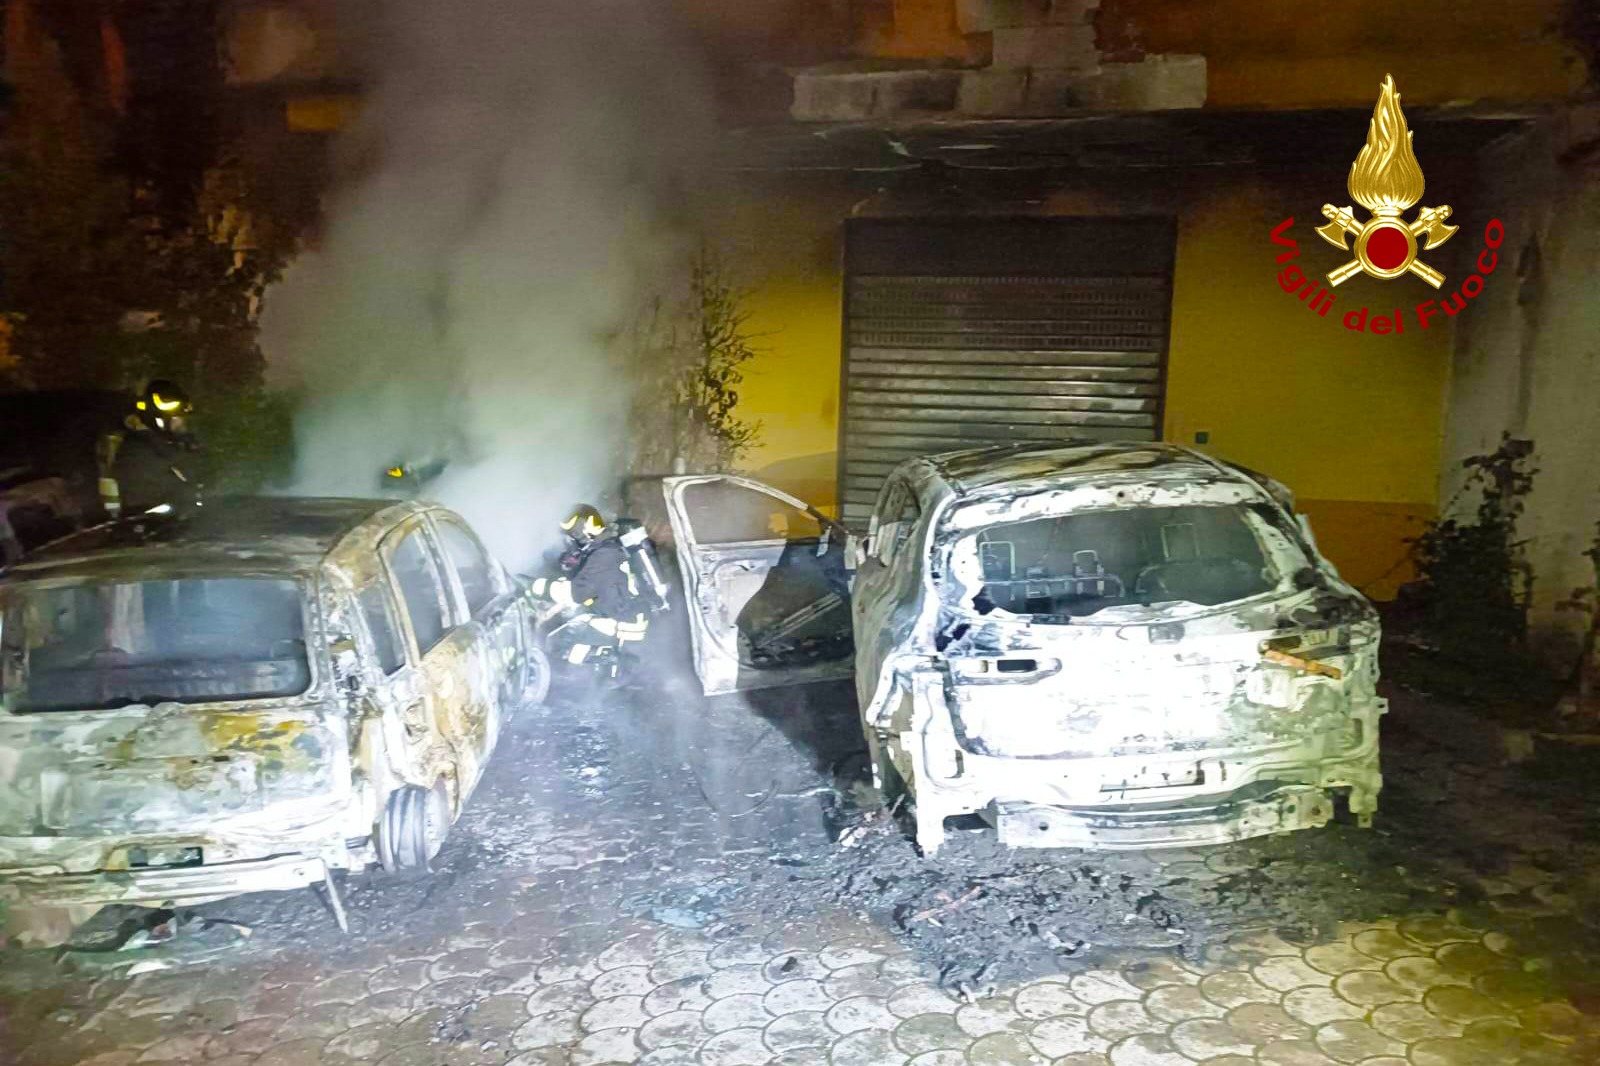 Solofra| Tre auto in fiamme nella notte, appartengono alla stessa famiglia